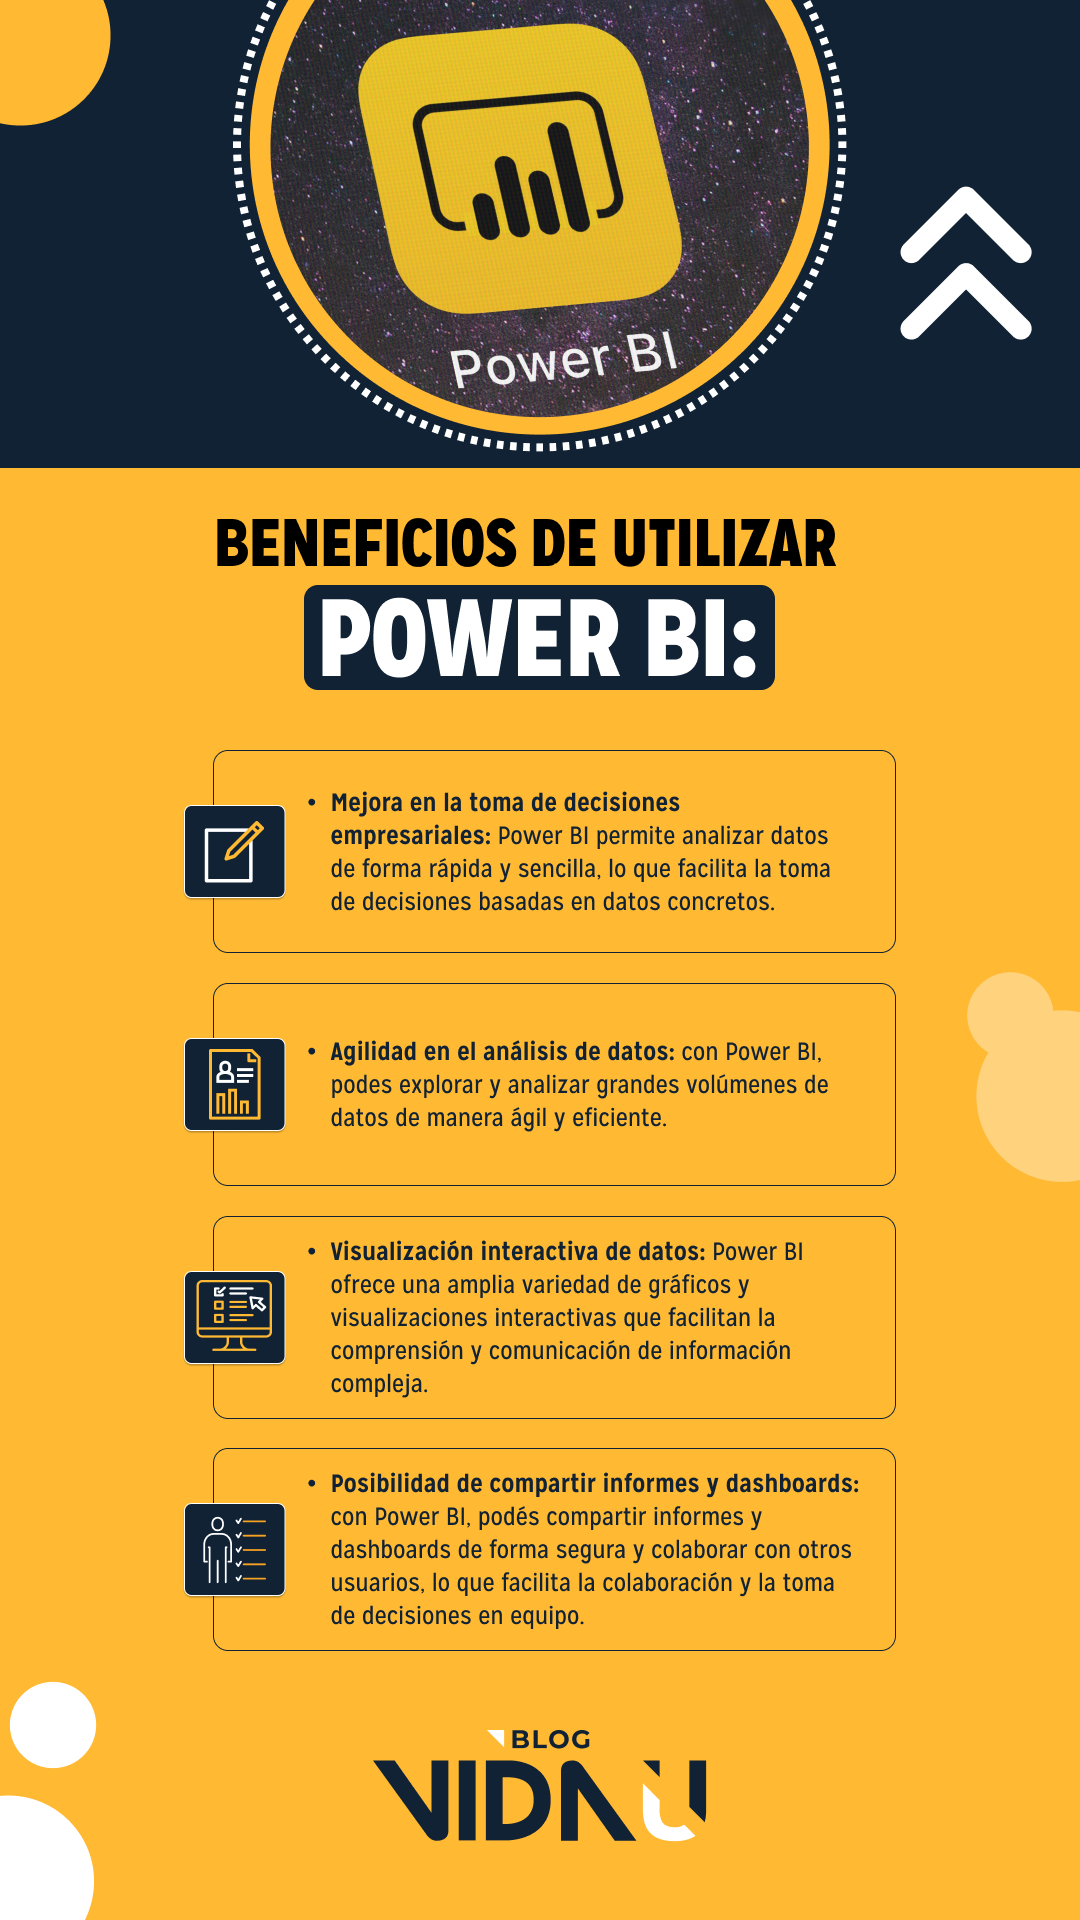 ¿Cómo funciona Power BI?